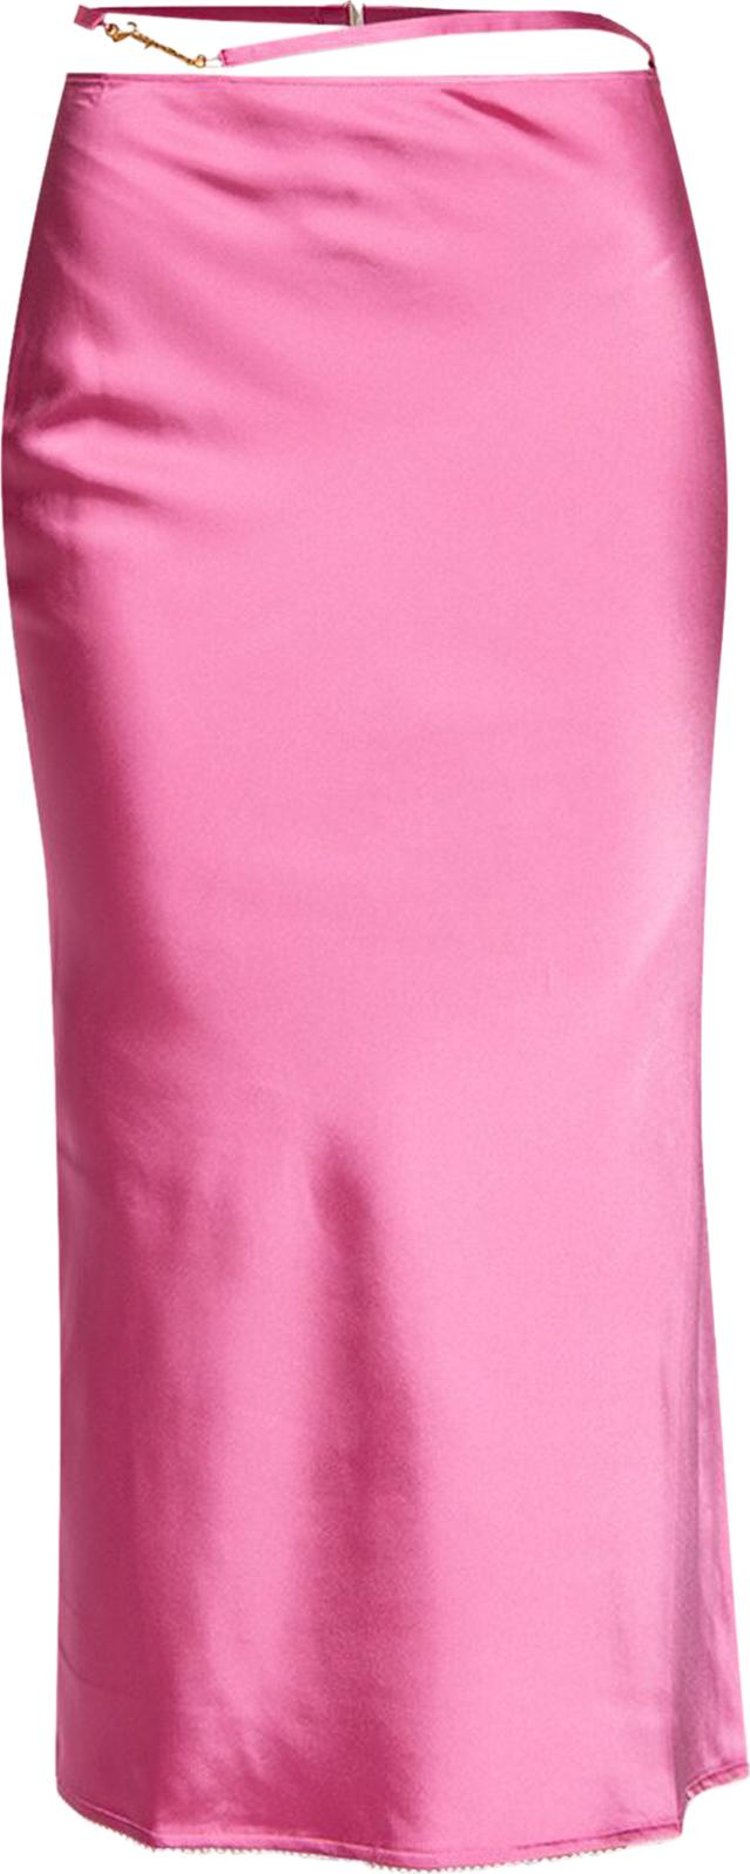 Jacquemus La Jupe Notte Satin Midi Skirt 'Pink'